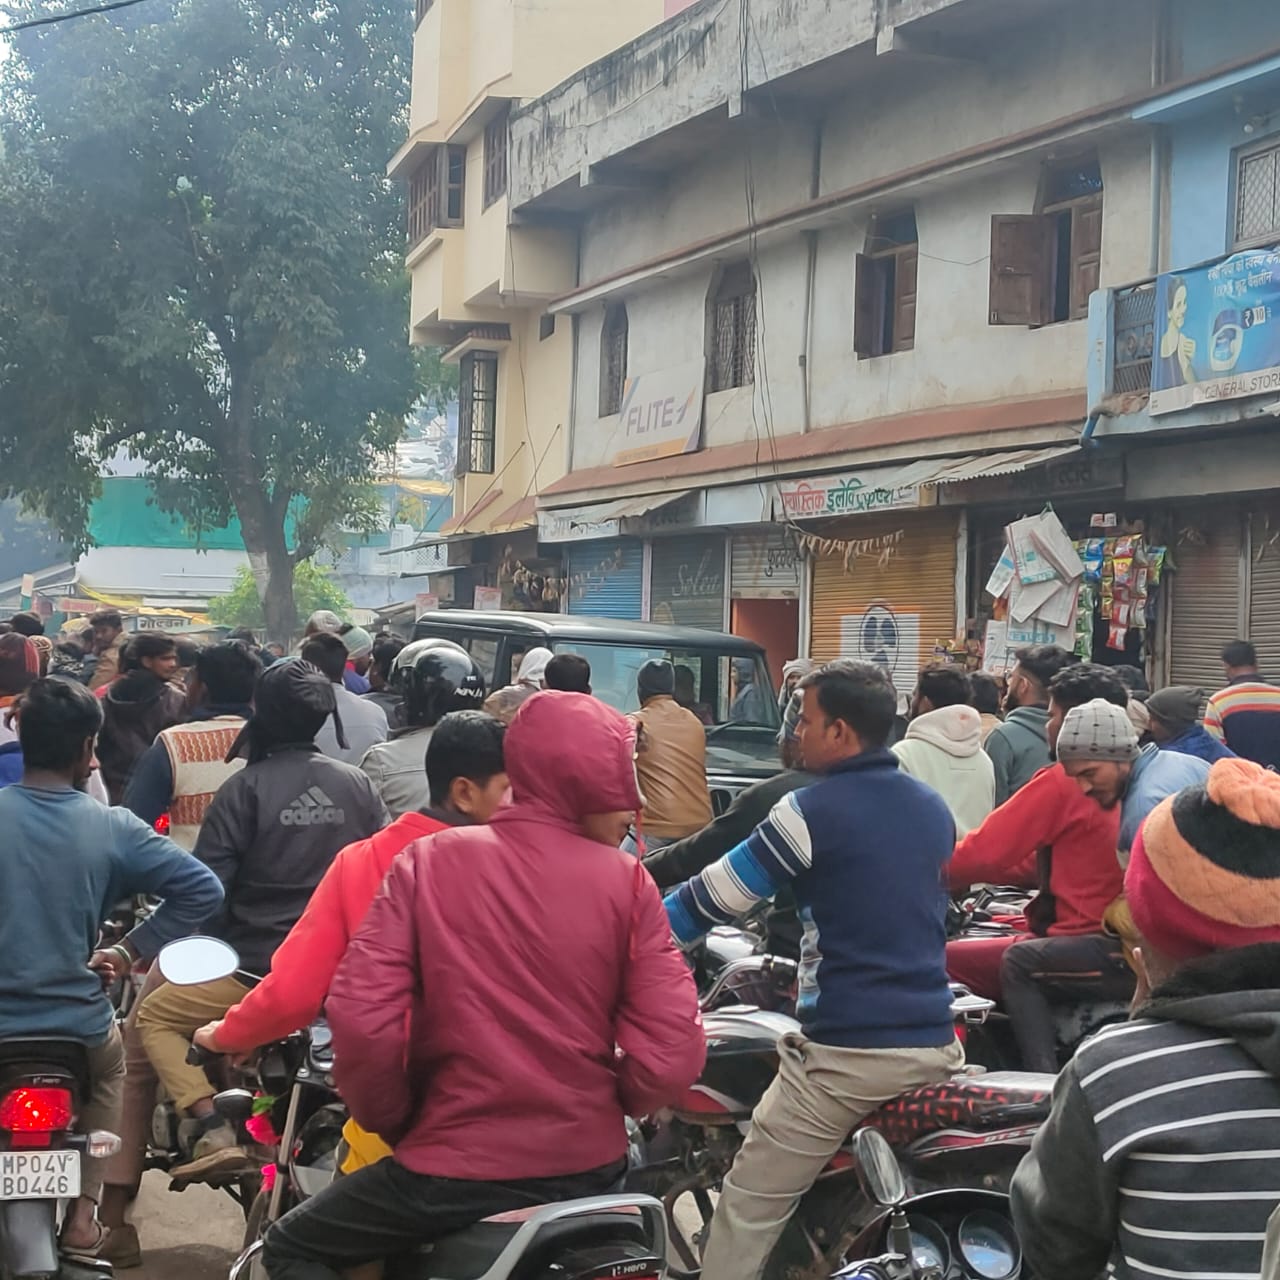 भाजपा युवा युवा मोर्चा जिला अध्यक्ष के स्वागत काफिले को लेकर सड़क पर लगा भारी जाम, स्वागत के चक्कर में नगर के लोग जाम से होते रहे रहे परेशान | New India Times